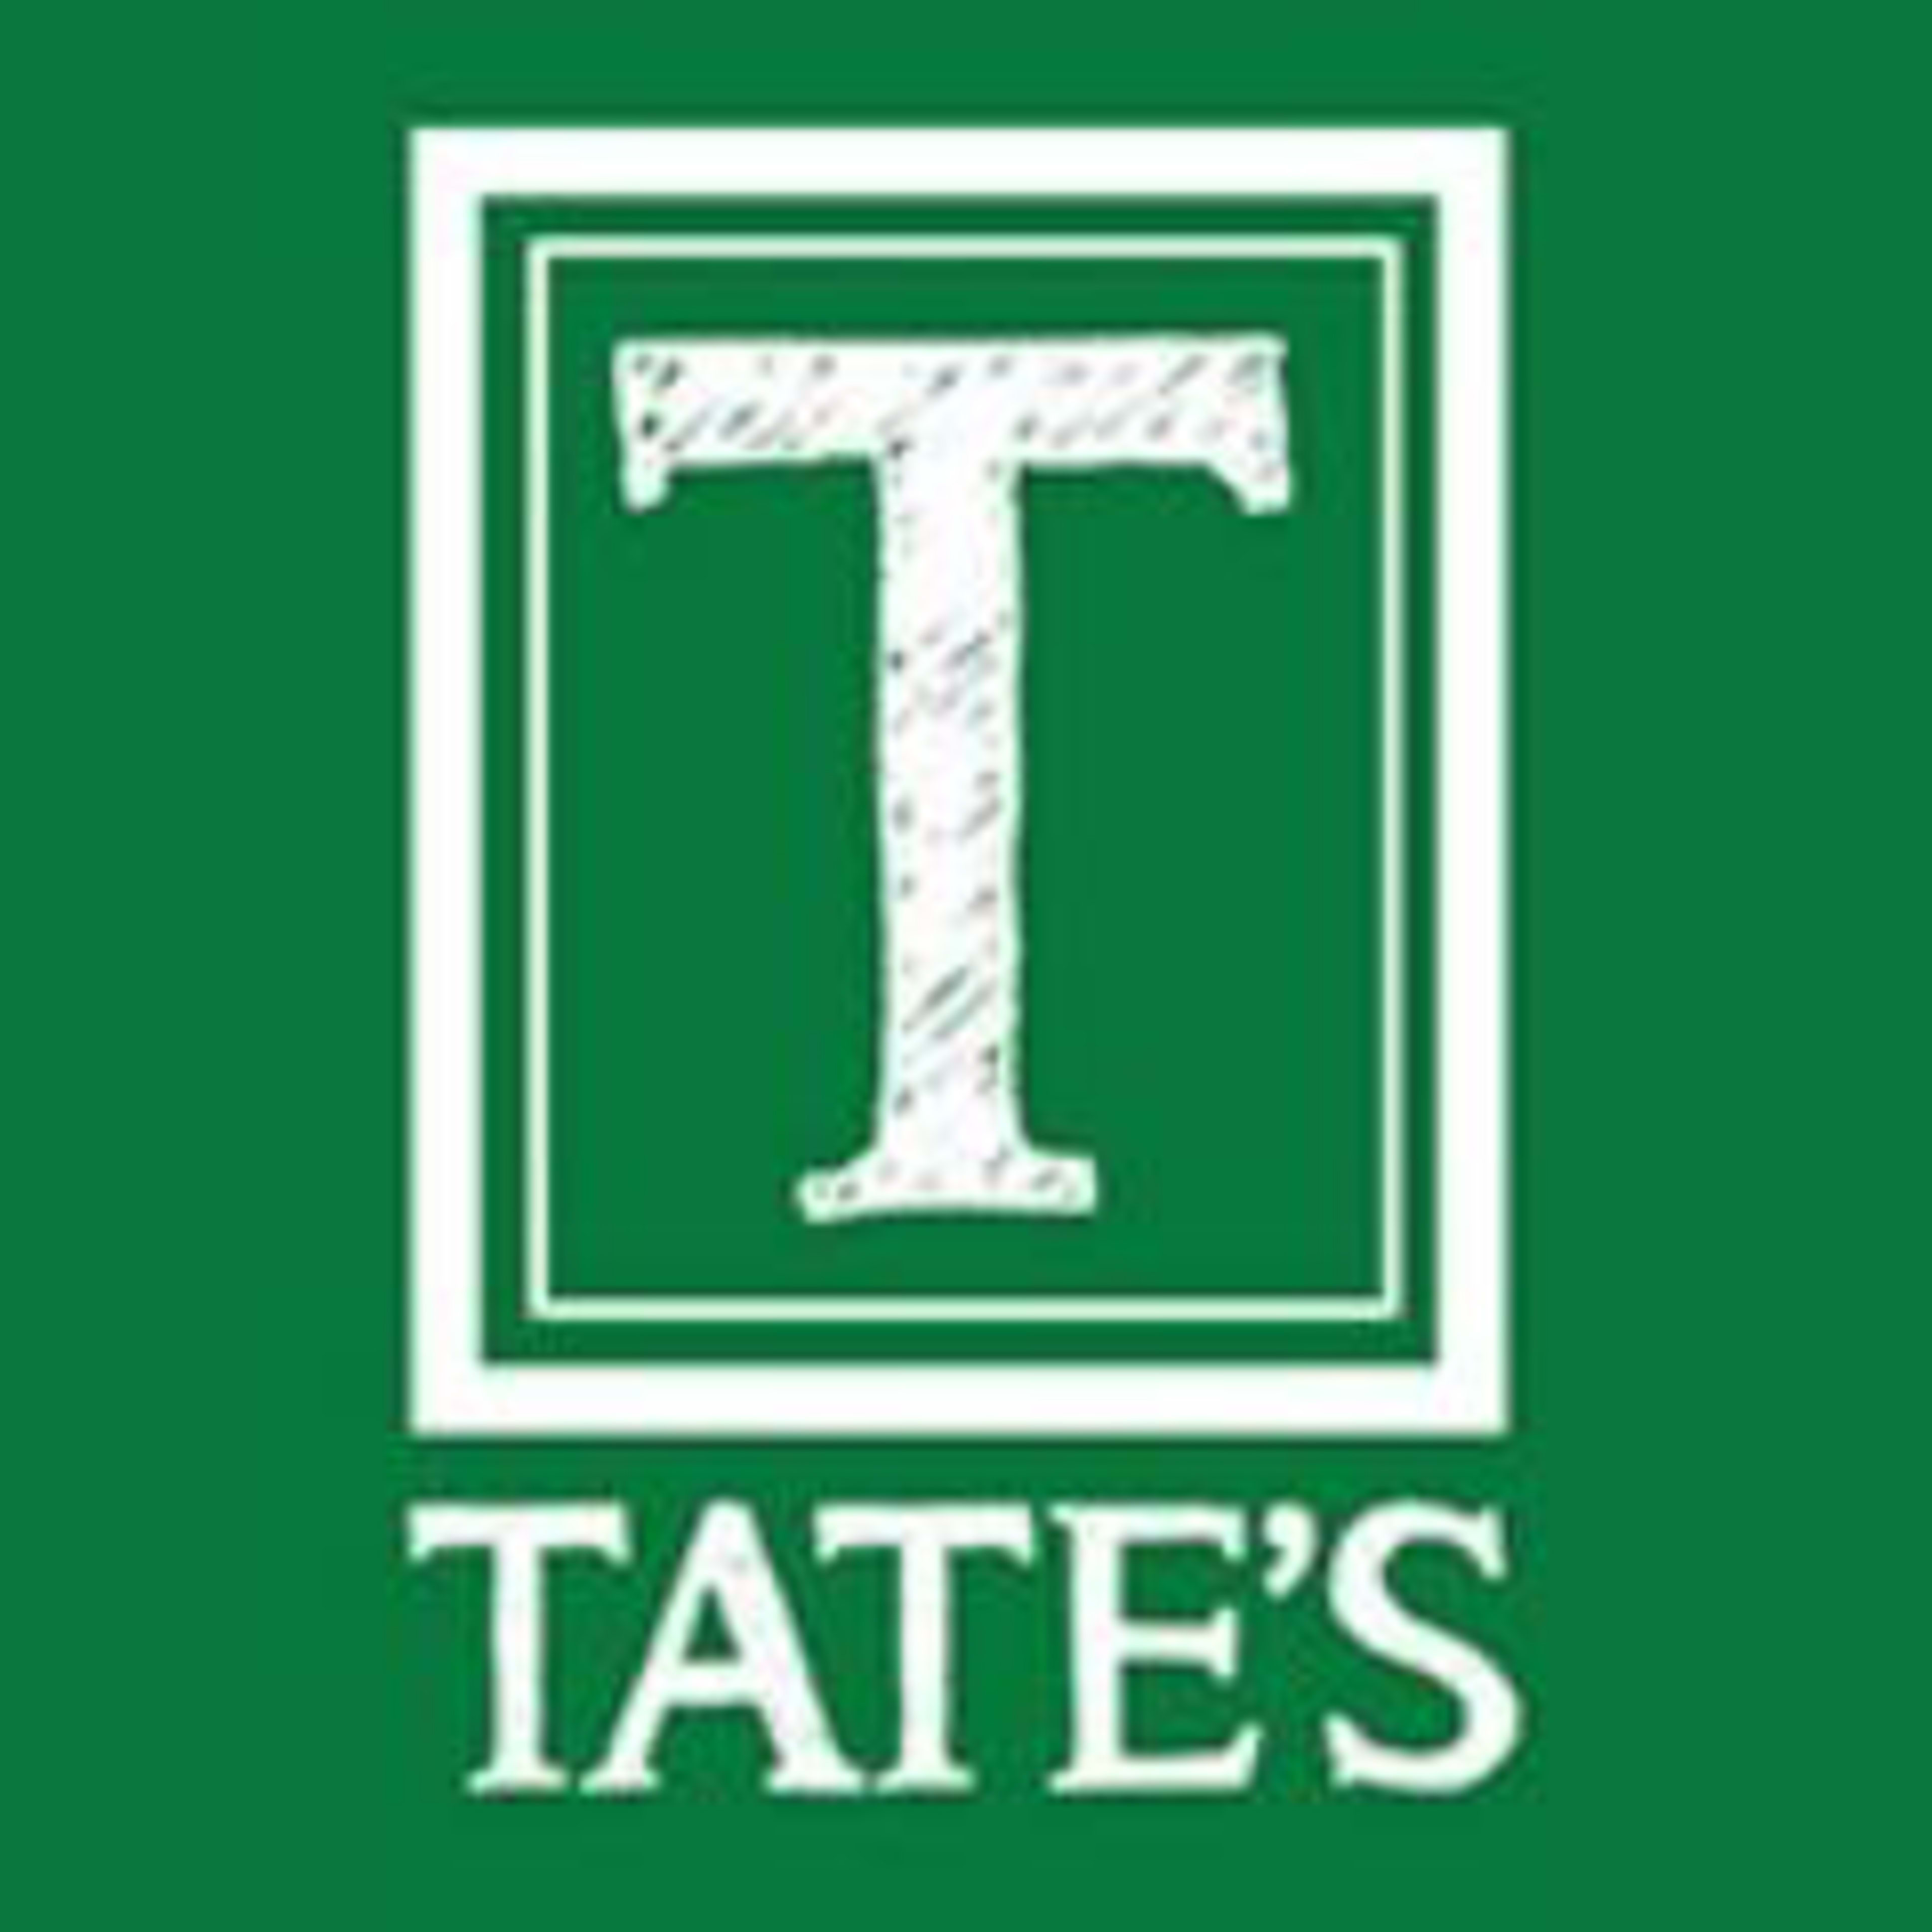 Tate's Bake Shop Code